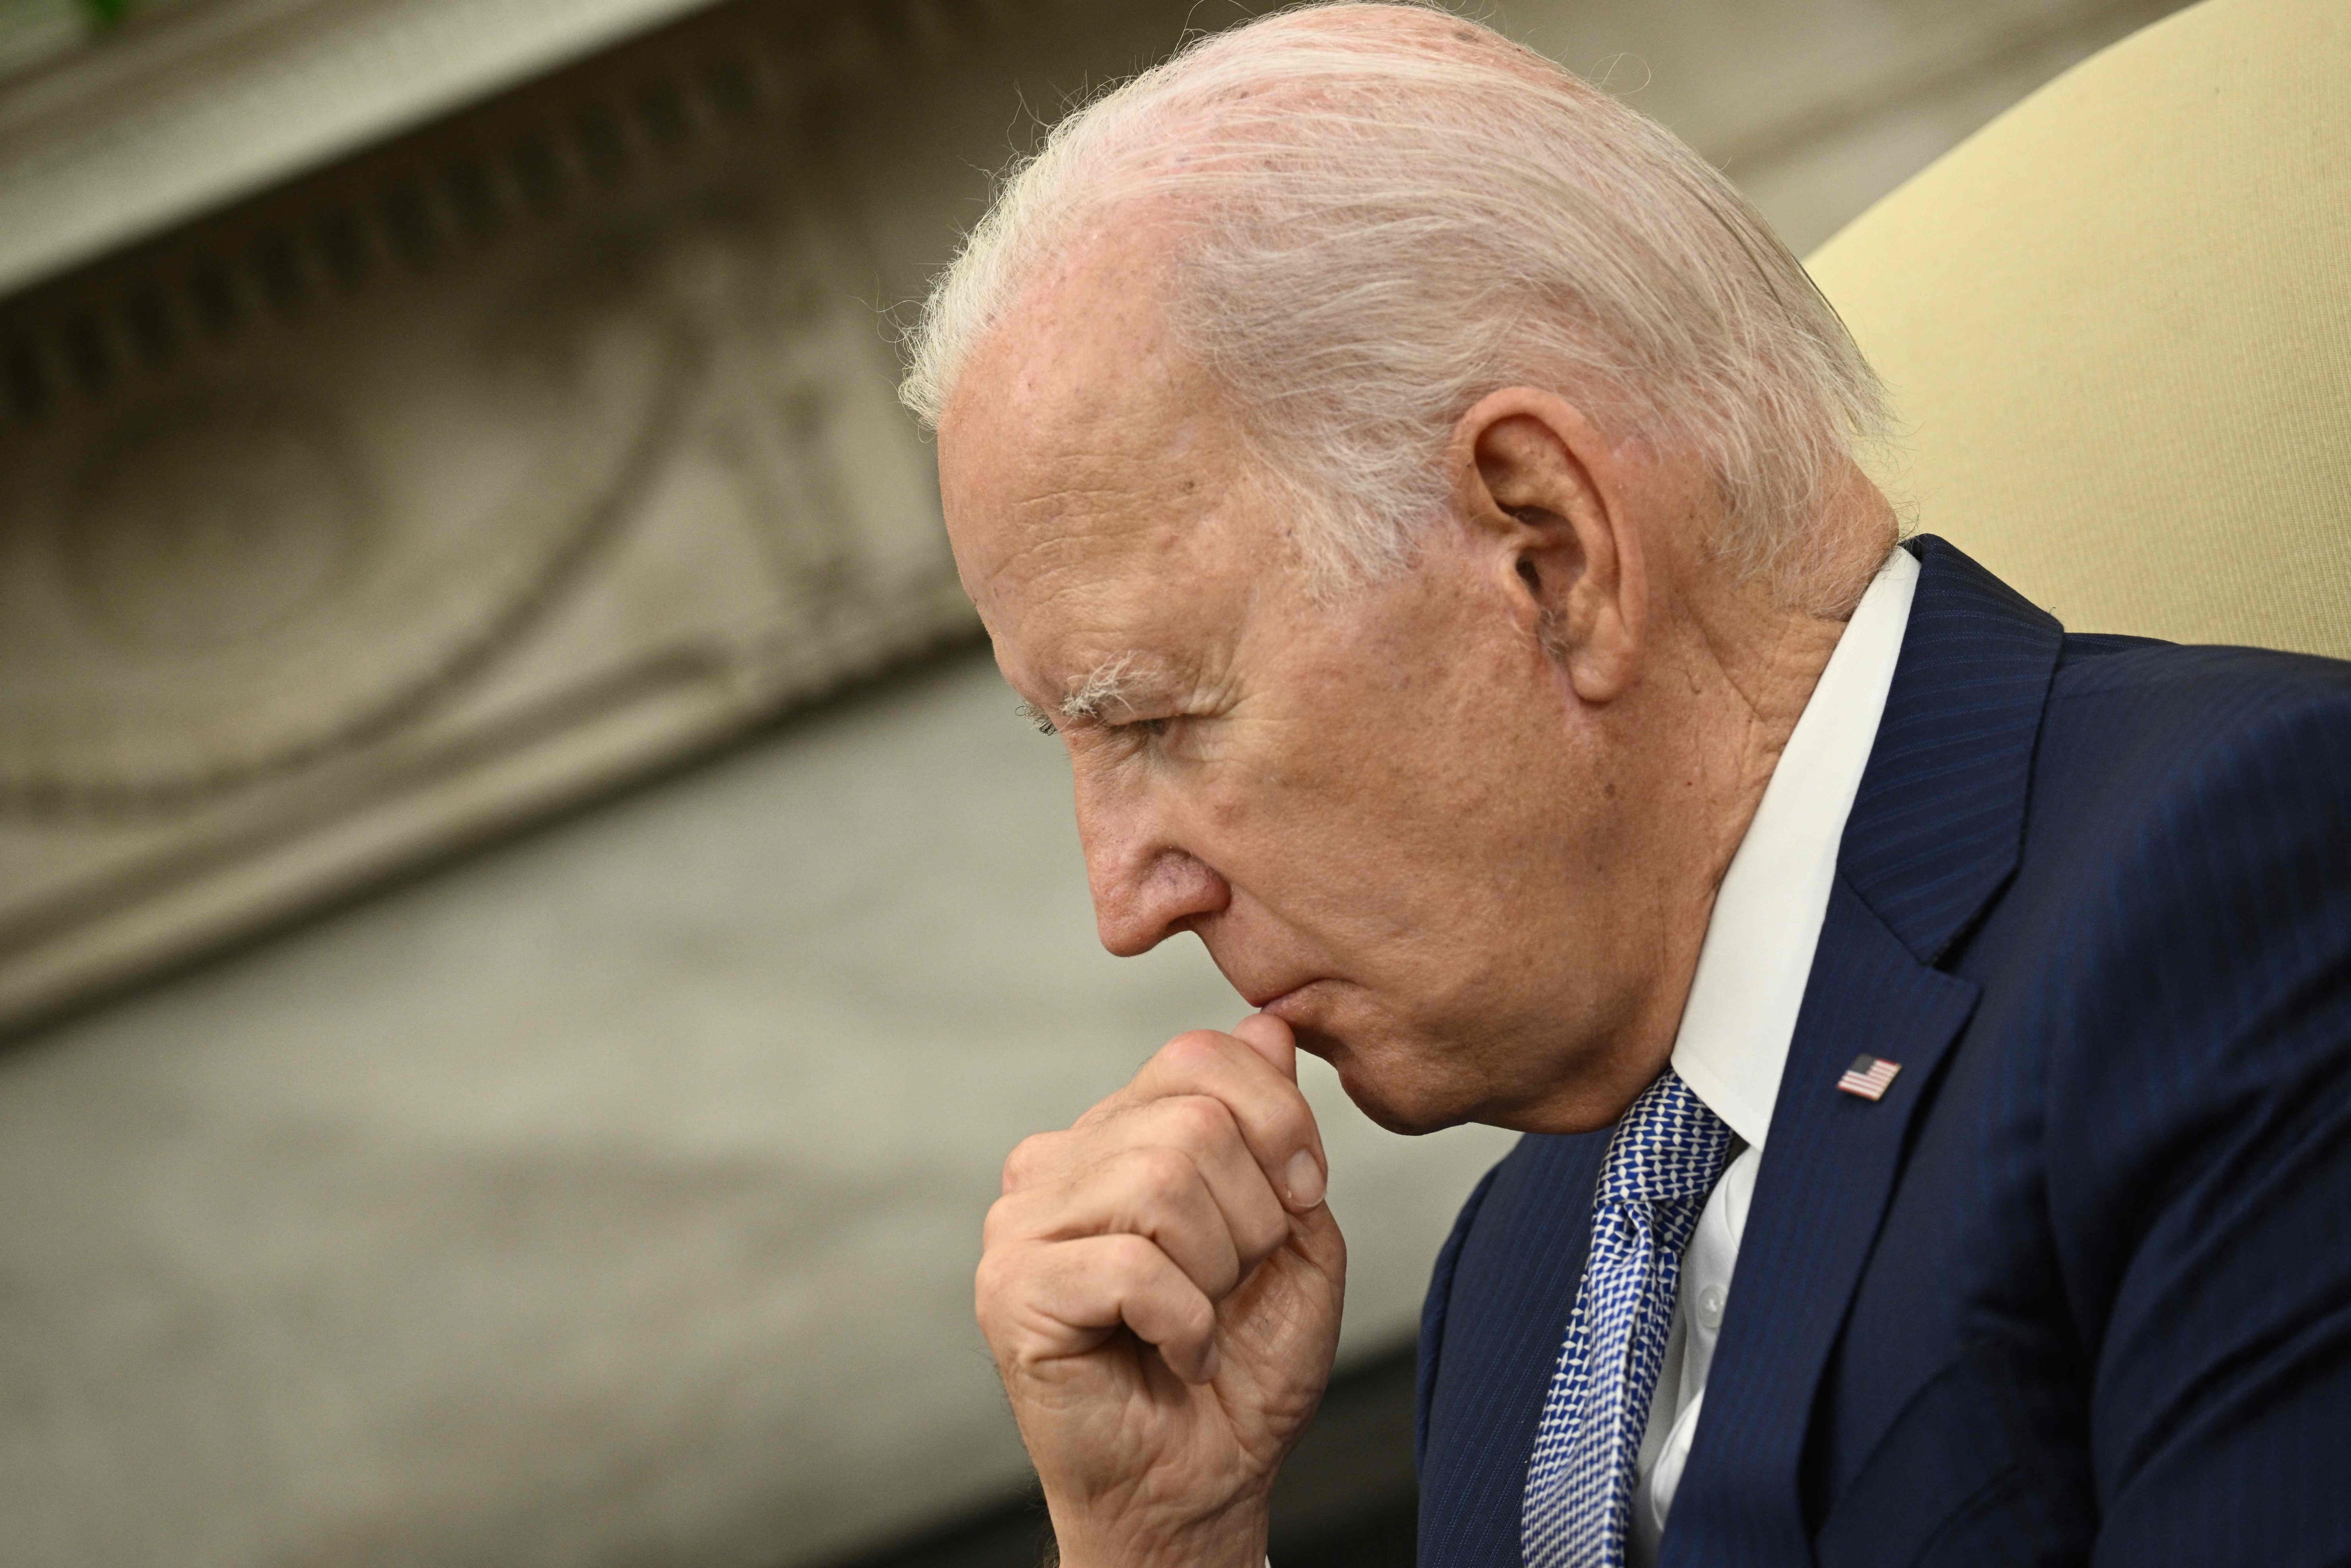 Un panel solicitado por el presidente Joe Biden reconoce infracciones en la vigilancia de no estadounidenses, mientras se debate su relevancia para la seguridad nacional.